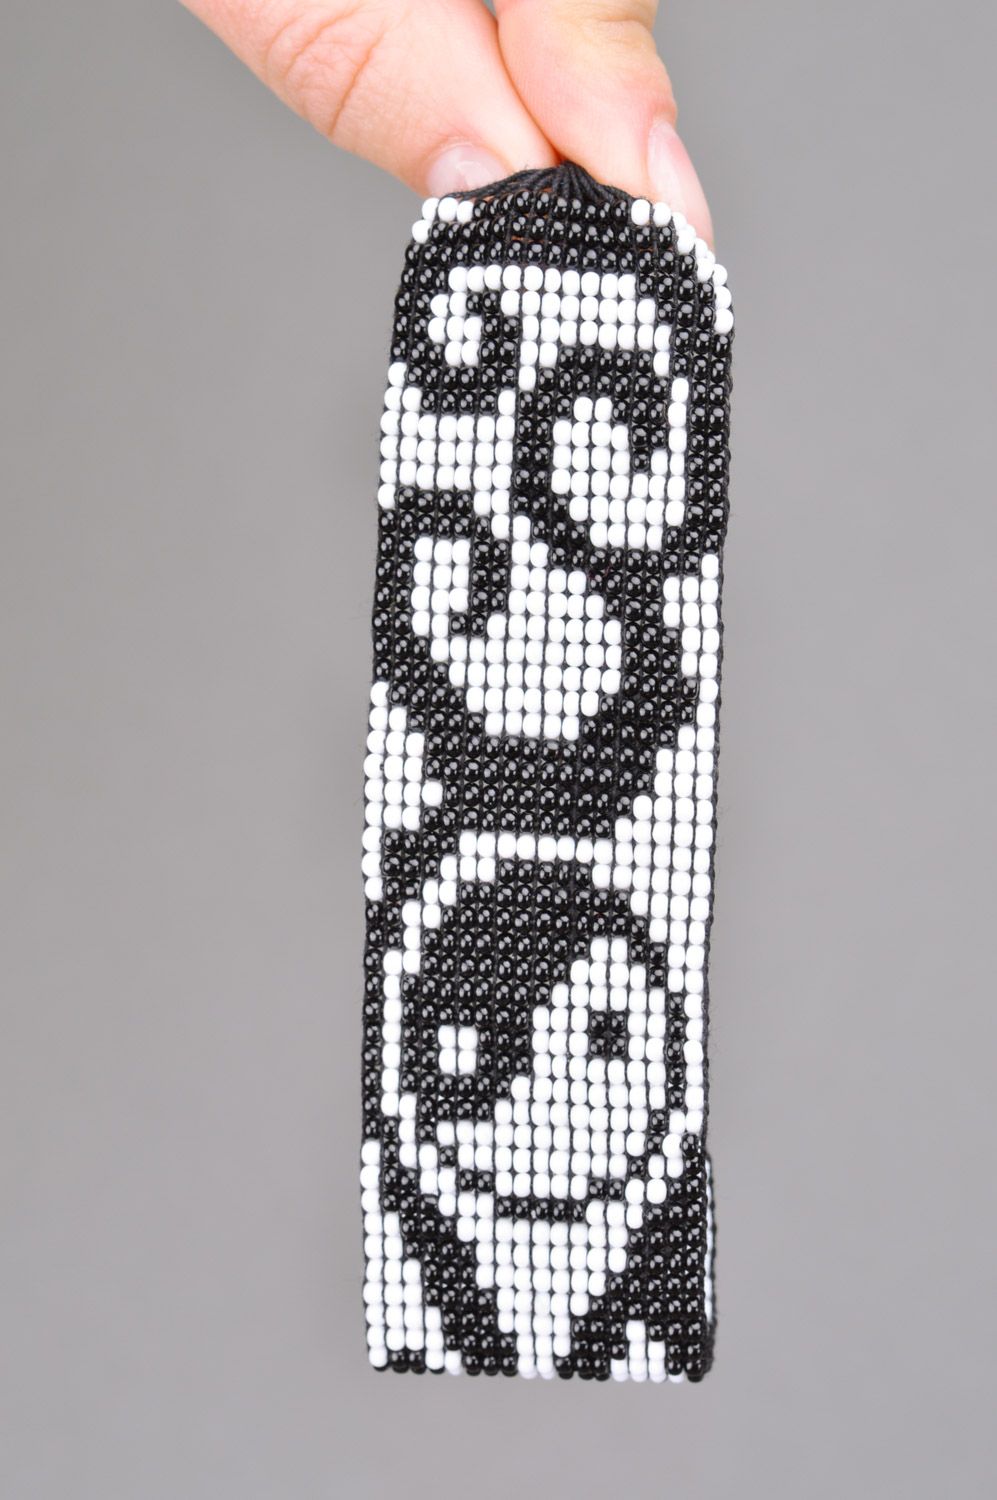 Браслет из бисера широкий на завязках ручной работы с черно-белыми узорами фото 3